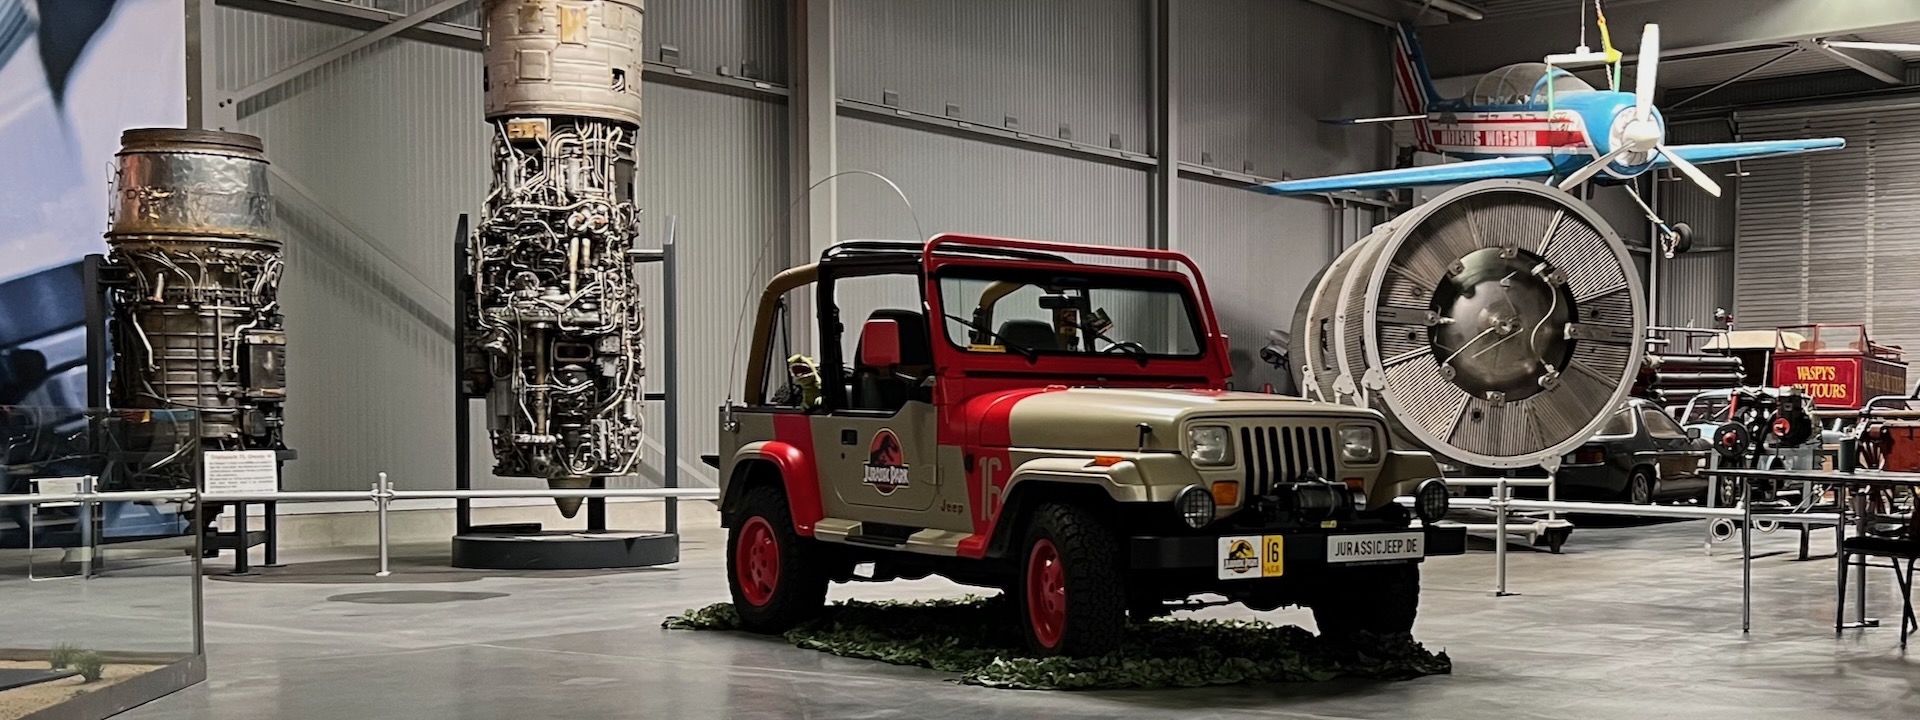 Ein „Jurassic Park“-Jeep, präsentiert beim Cosplay-Wochenende 2021 im Technik Museum Speyer; im Hintergrund befinden sich Turbinen und ein Flugzeug